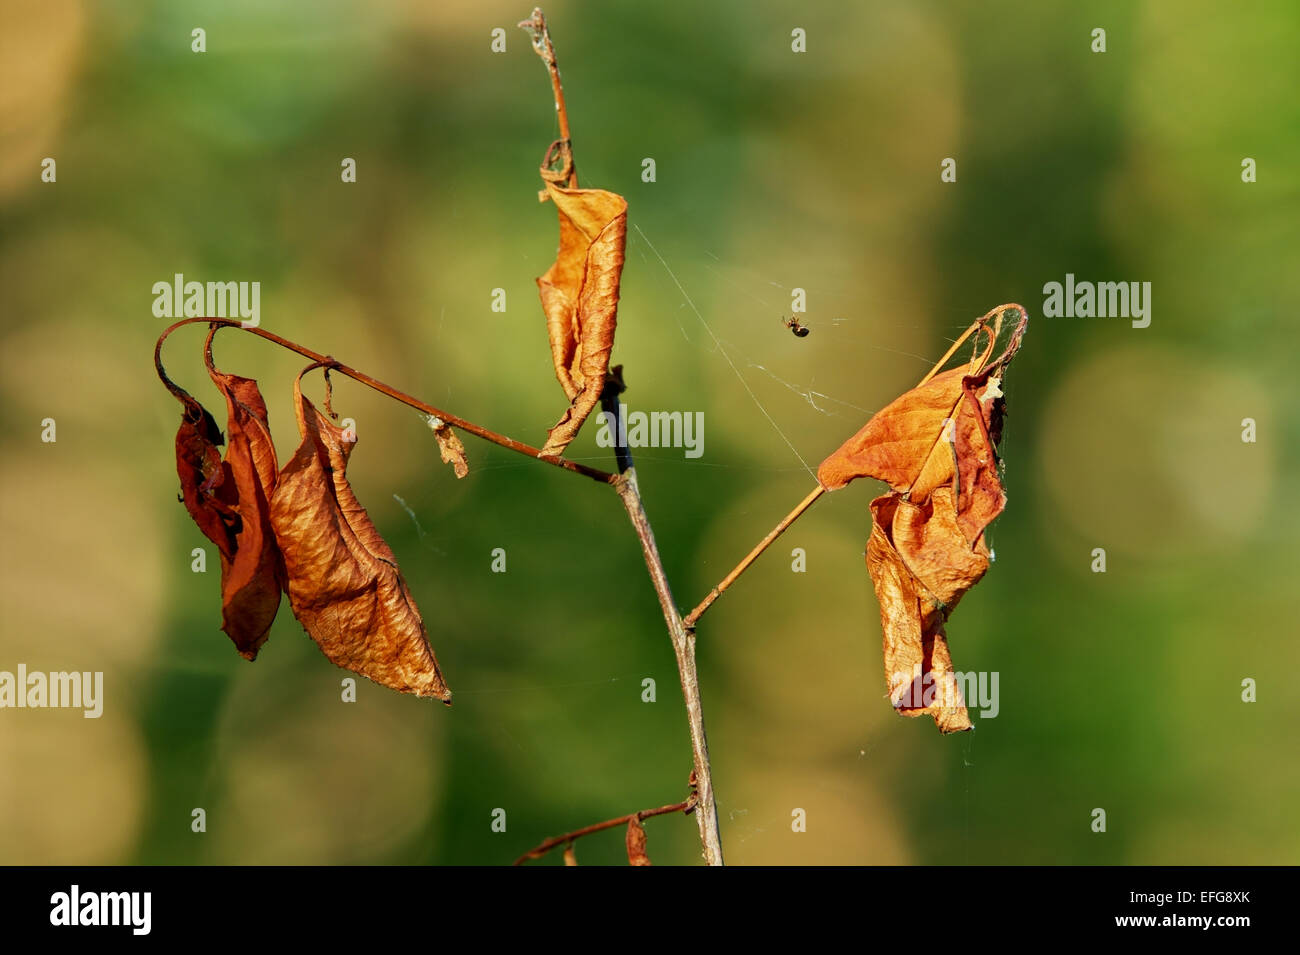 Nahaufnahme der Oberteil des dürren jungen Baum mit einer Spinne auf das Spinnennetz. Pommern, Nordpolen. Stockfoto